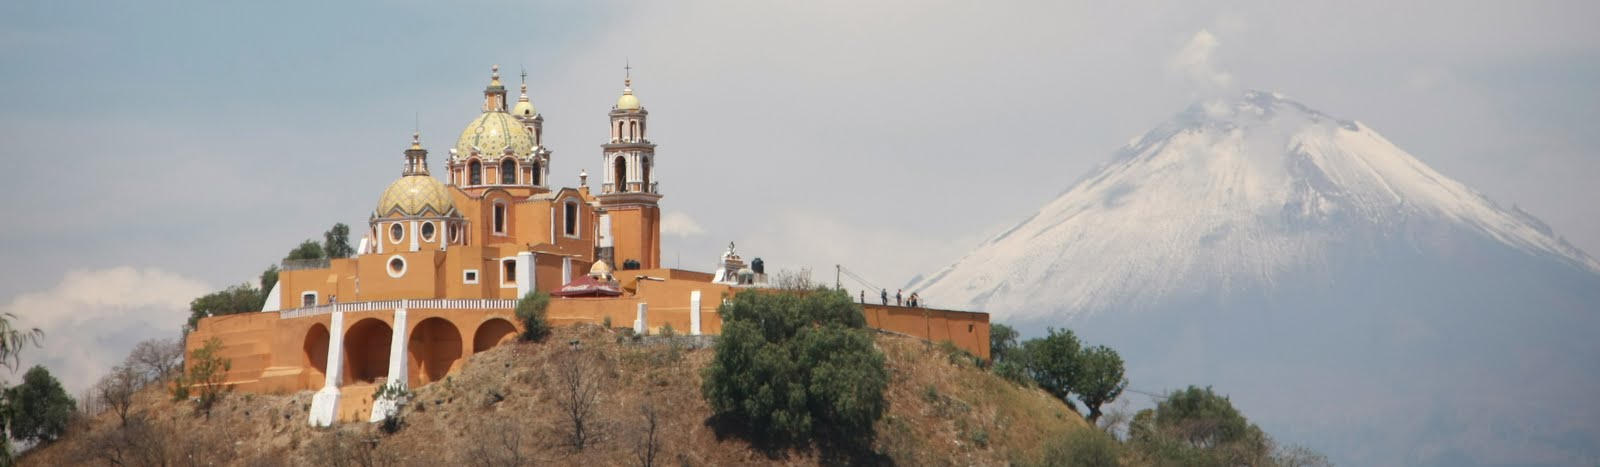 Church of Nuestra Senora de los Remedios and Popocatépetl